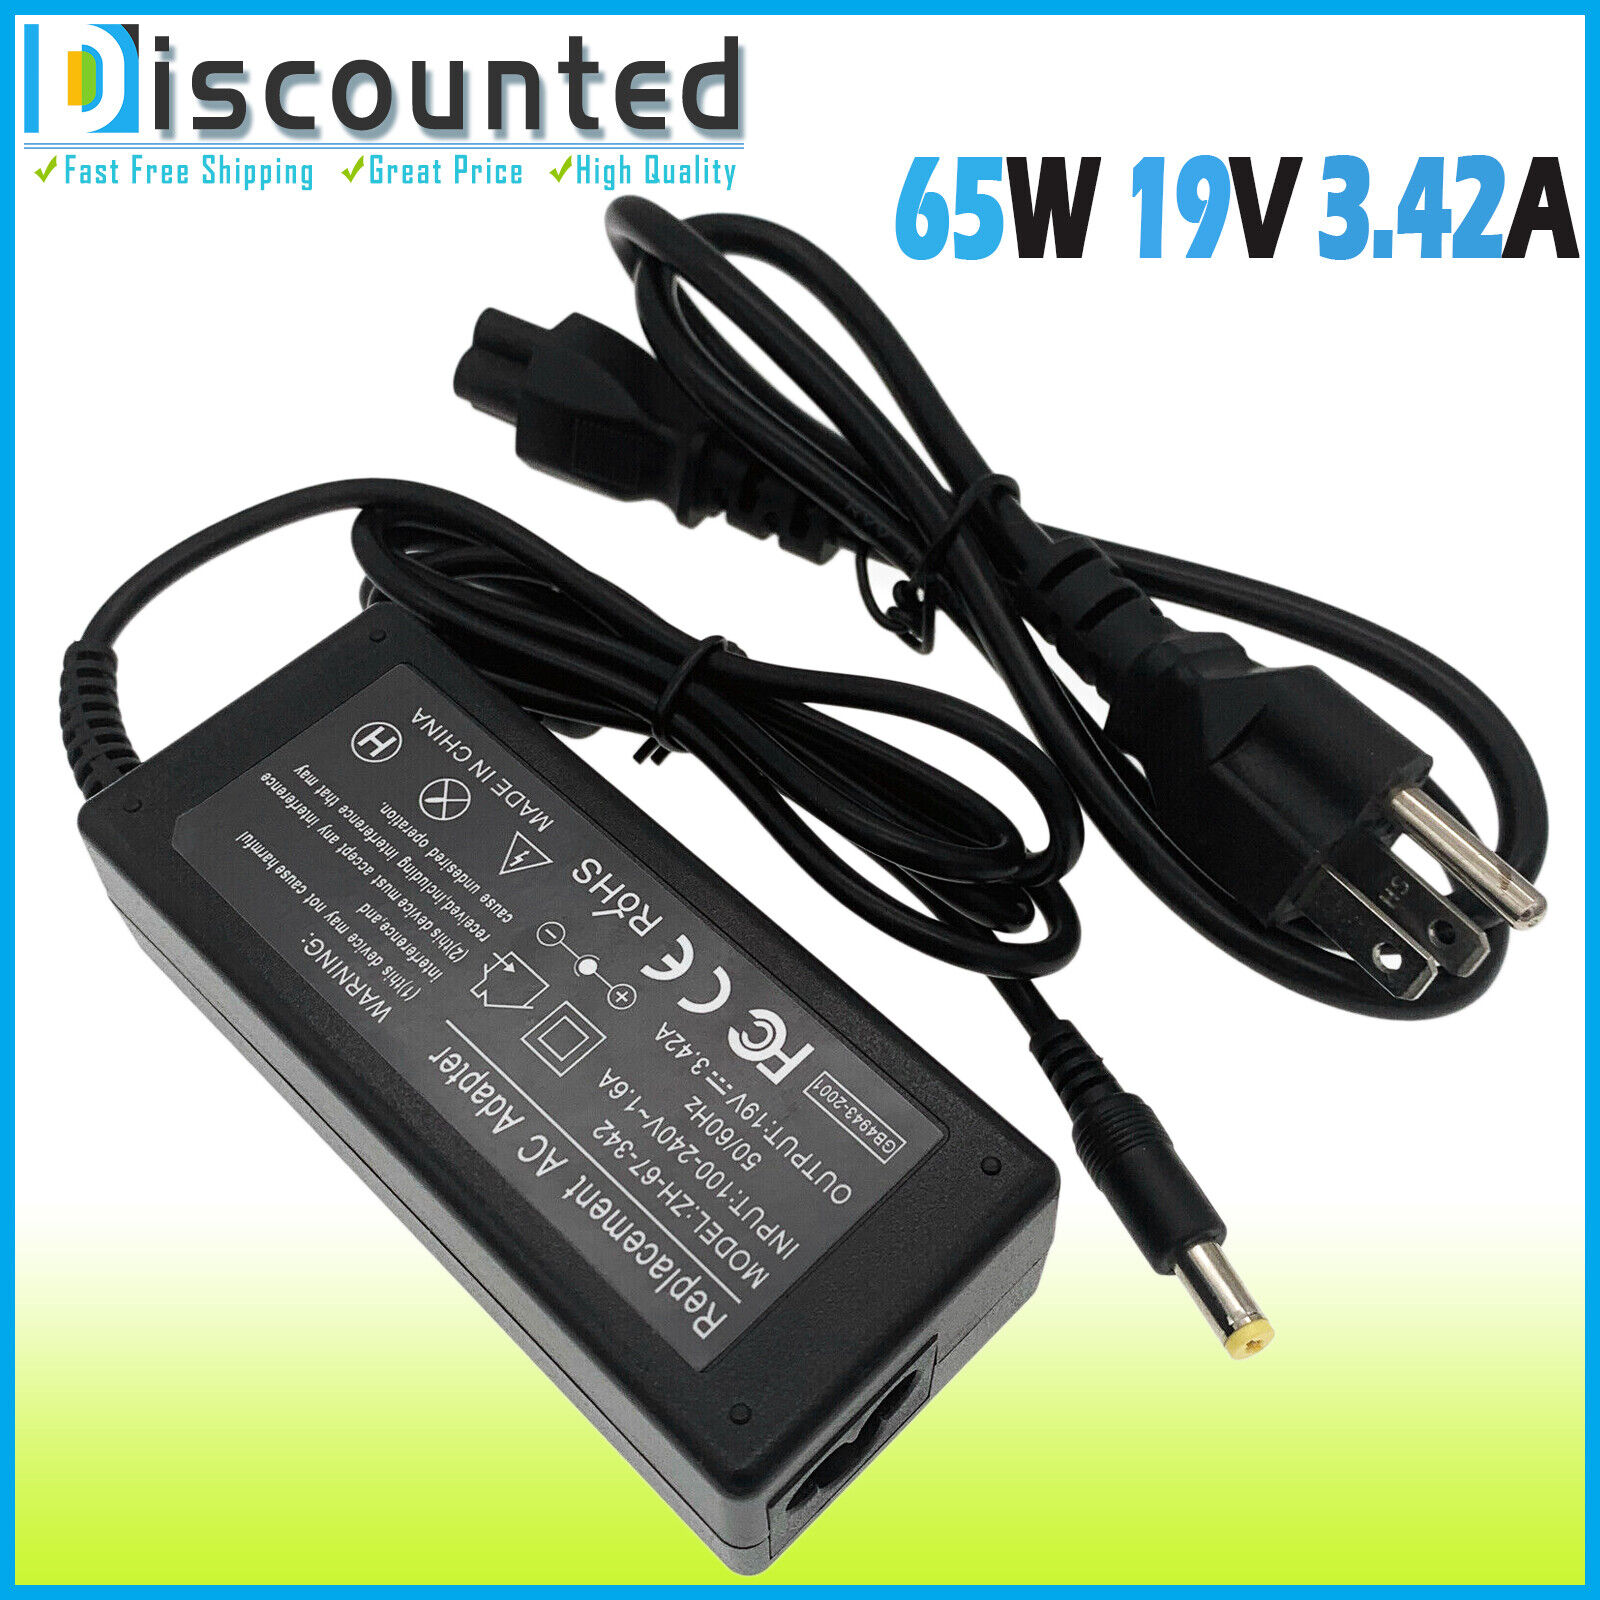 AC Adapter Power Supply for HP Monitor 27es 27VX 27xi N240h N270 22fw 27fw